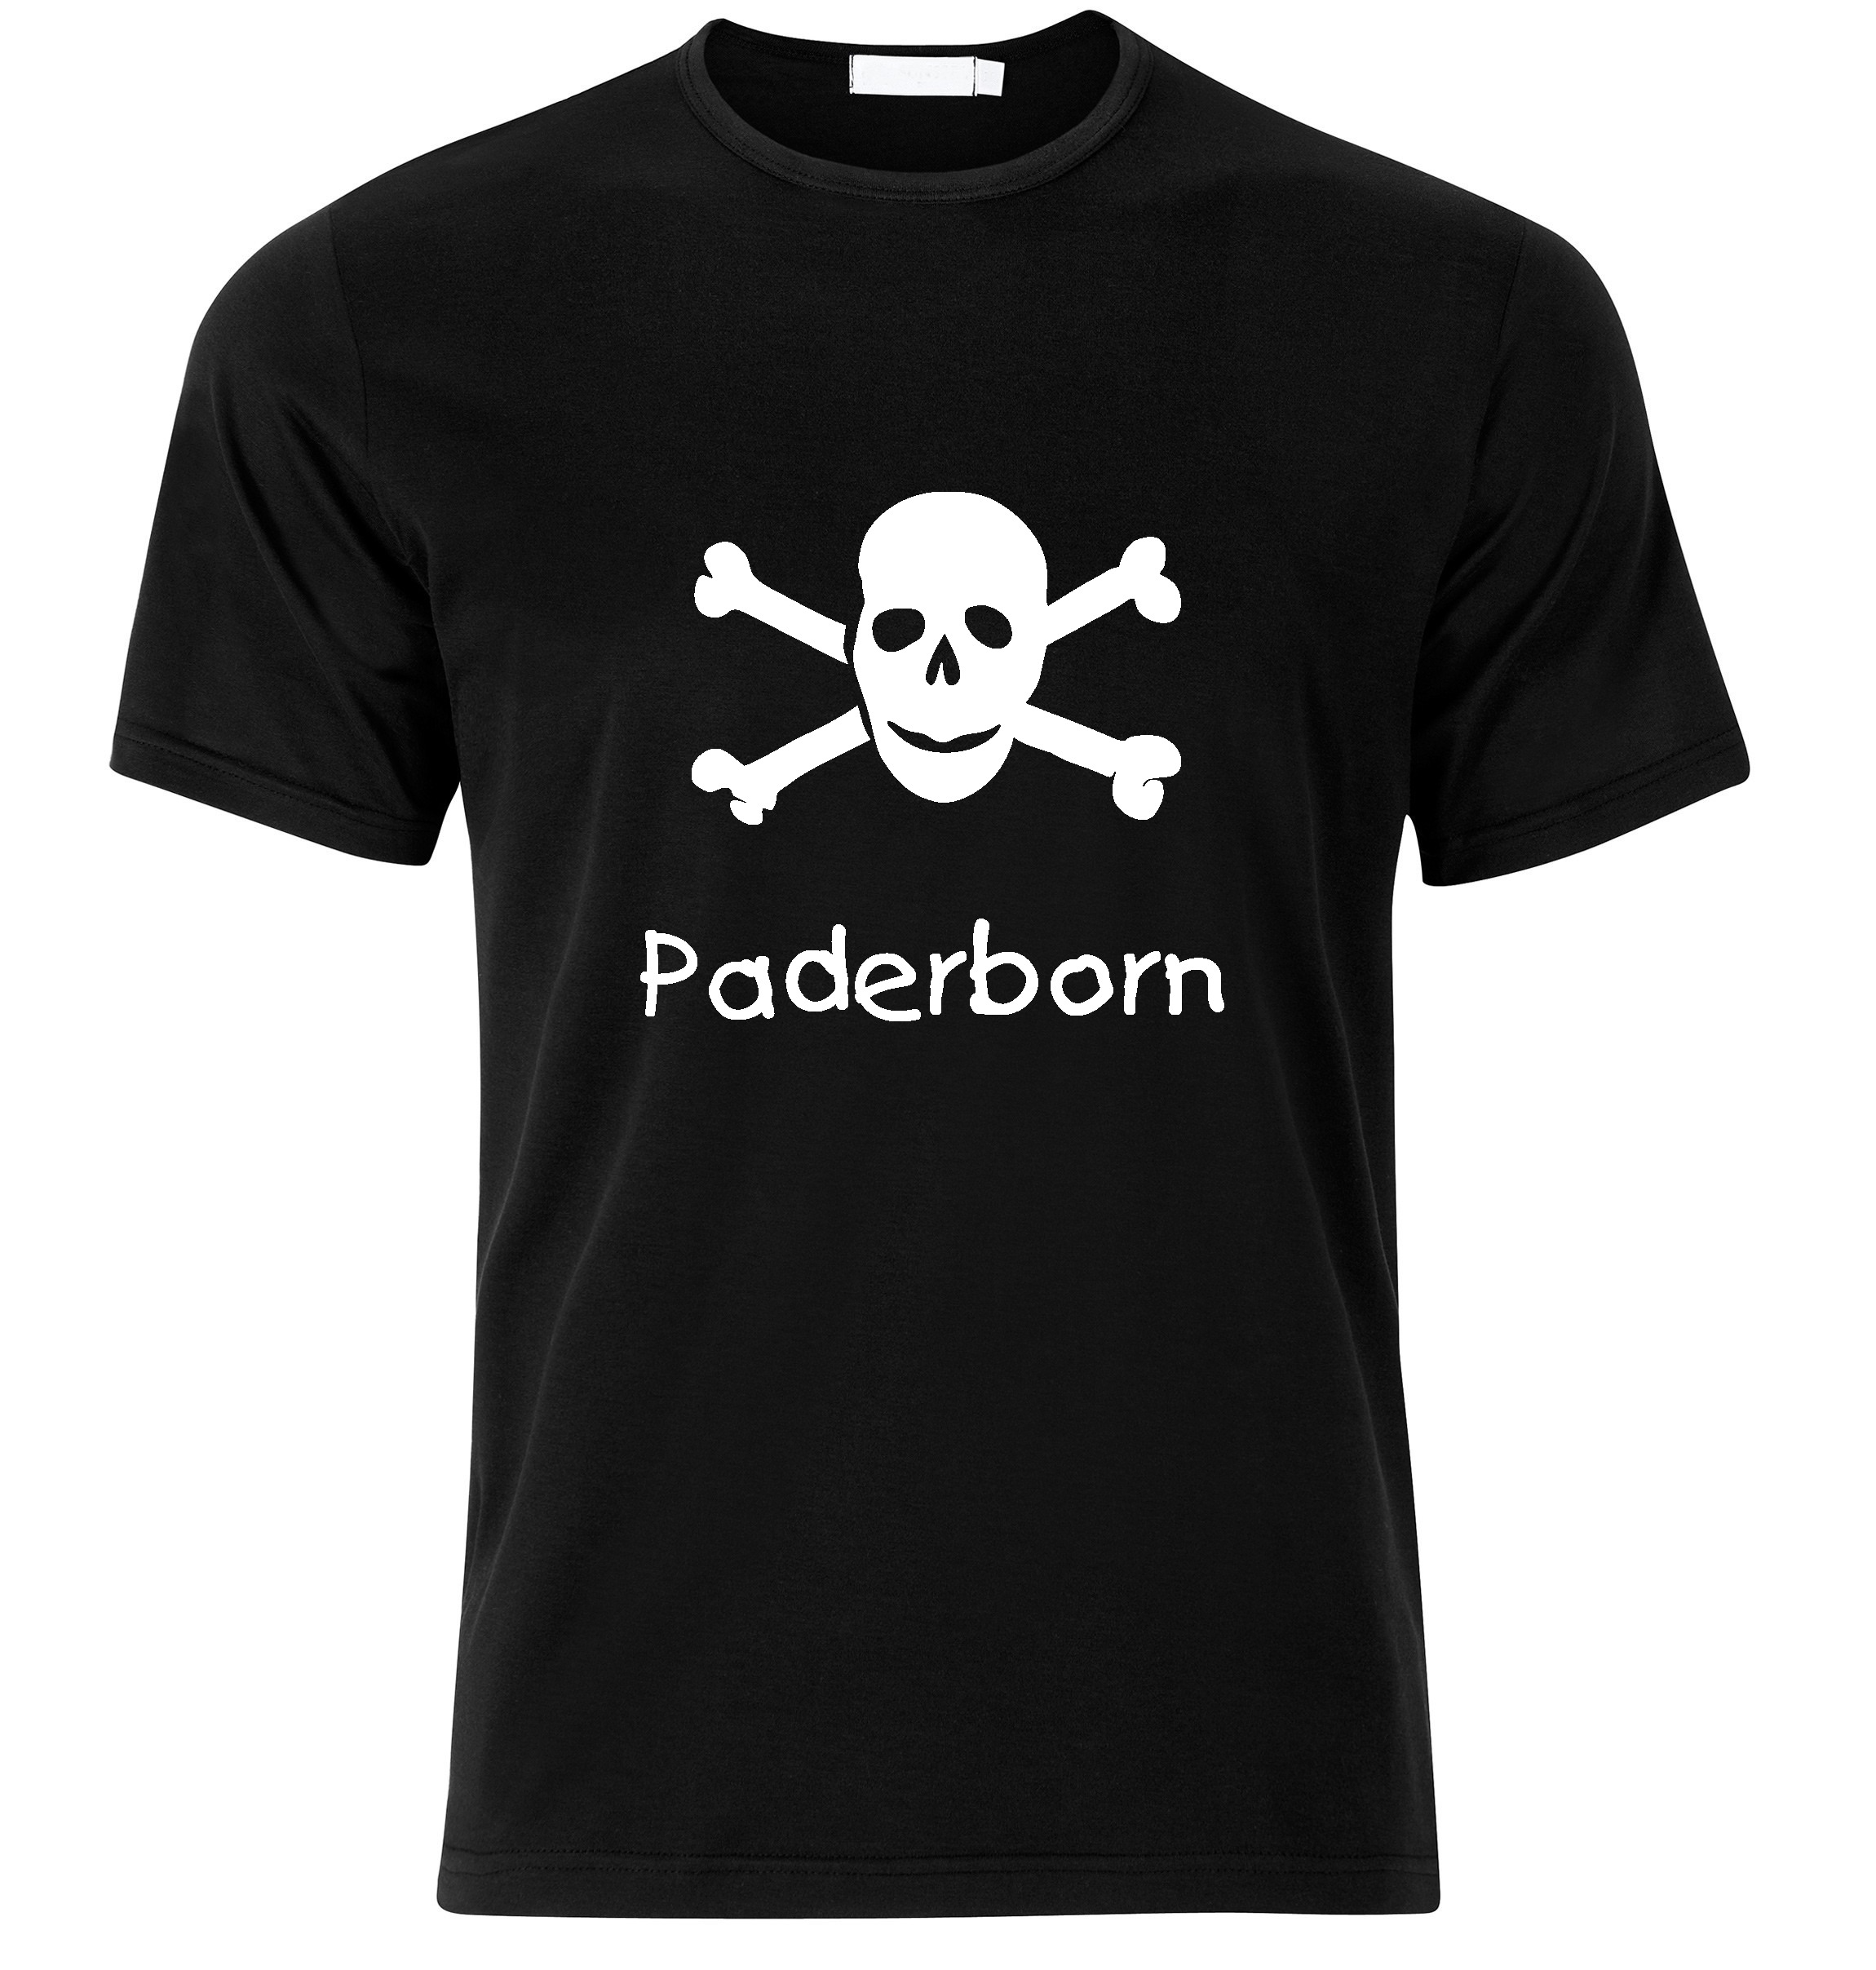 T-Shirt Paderborn Jolly Roger, Totenkopf